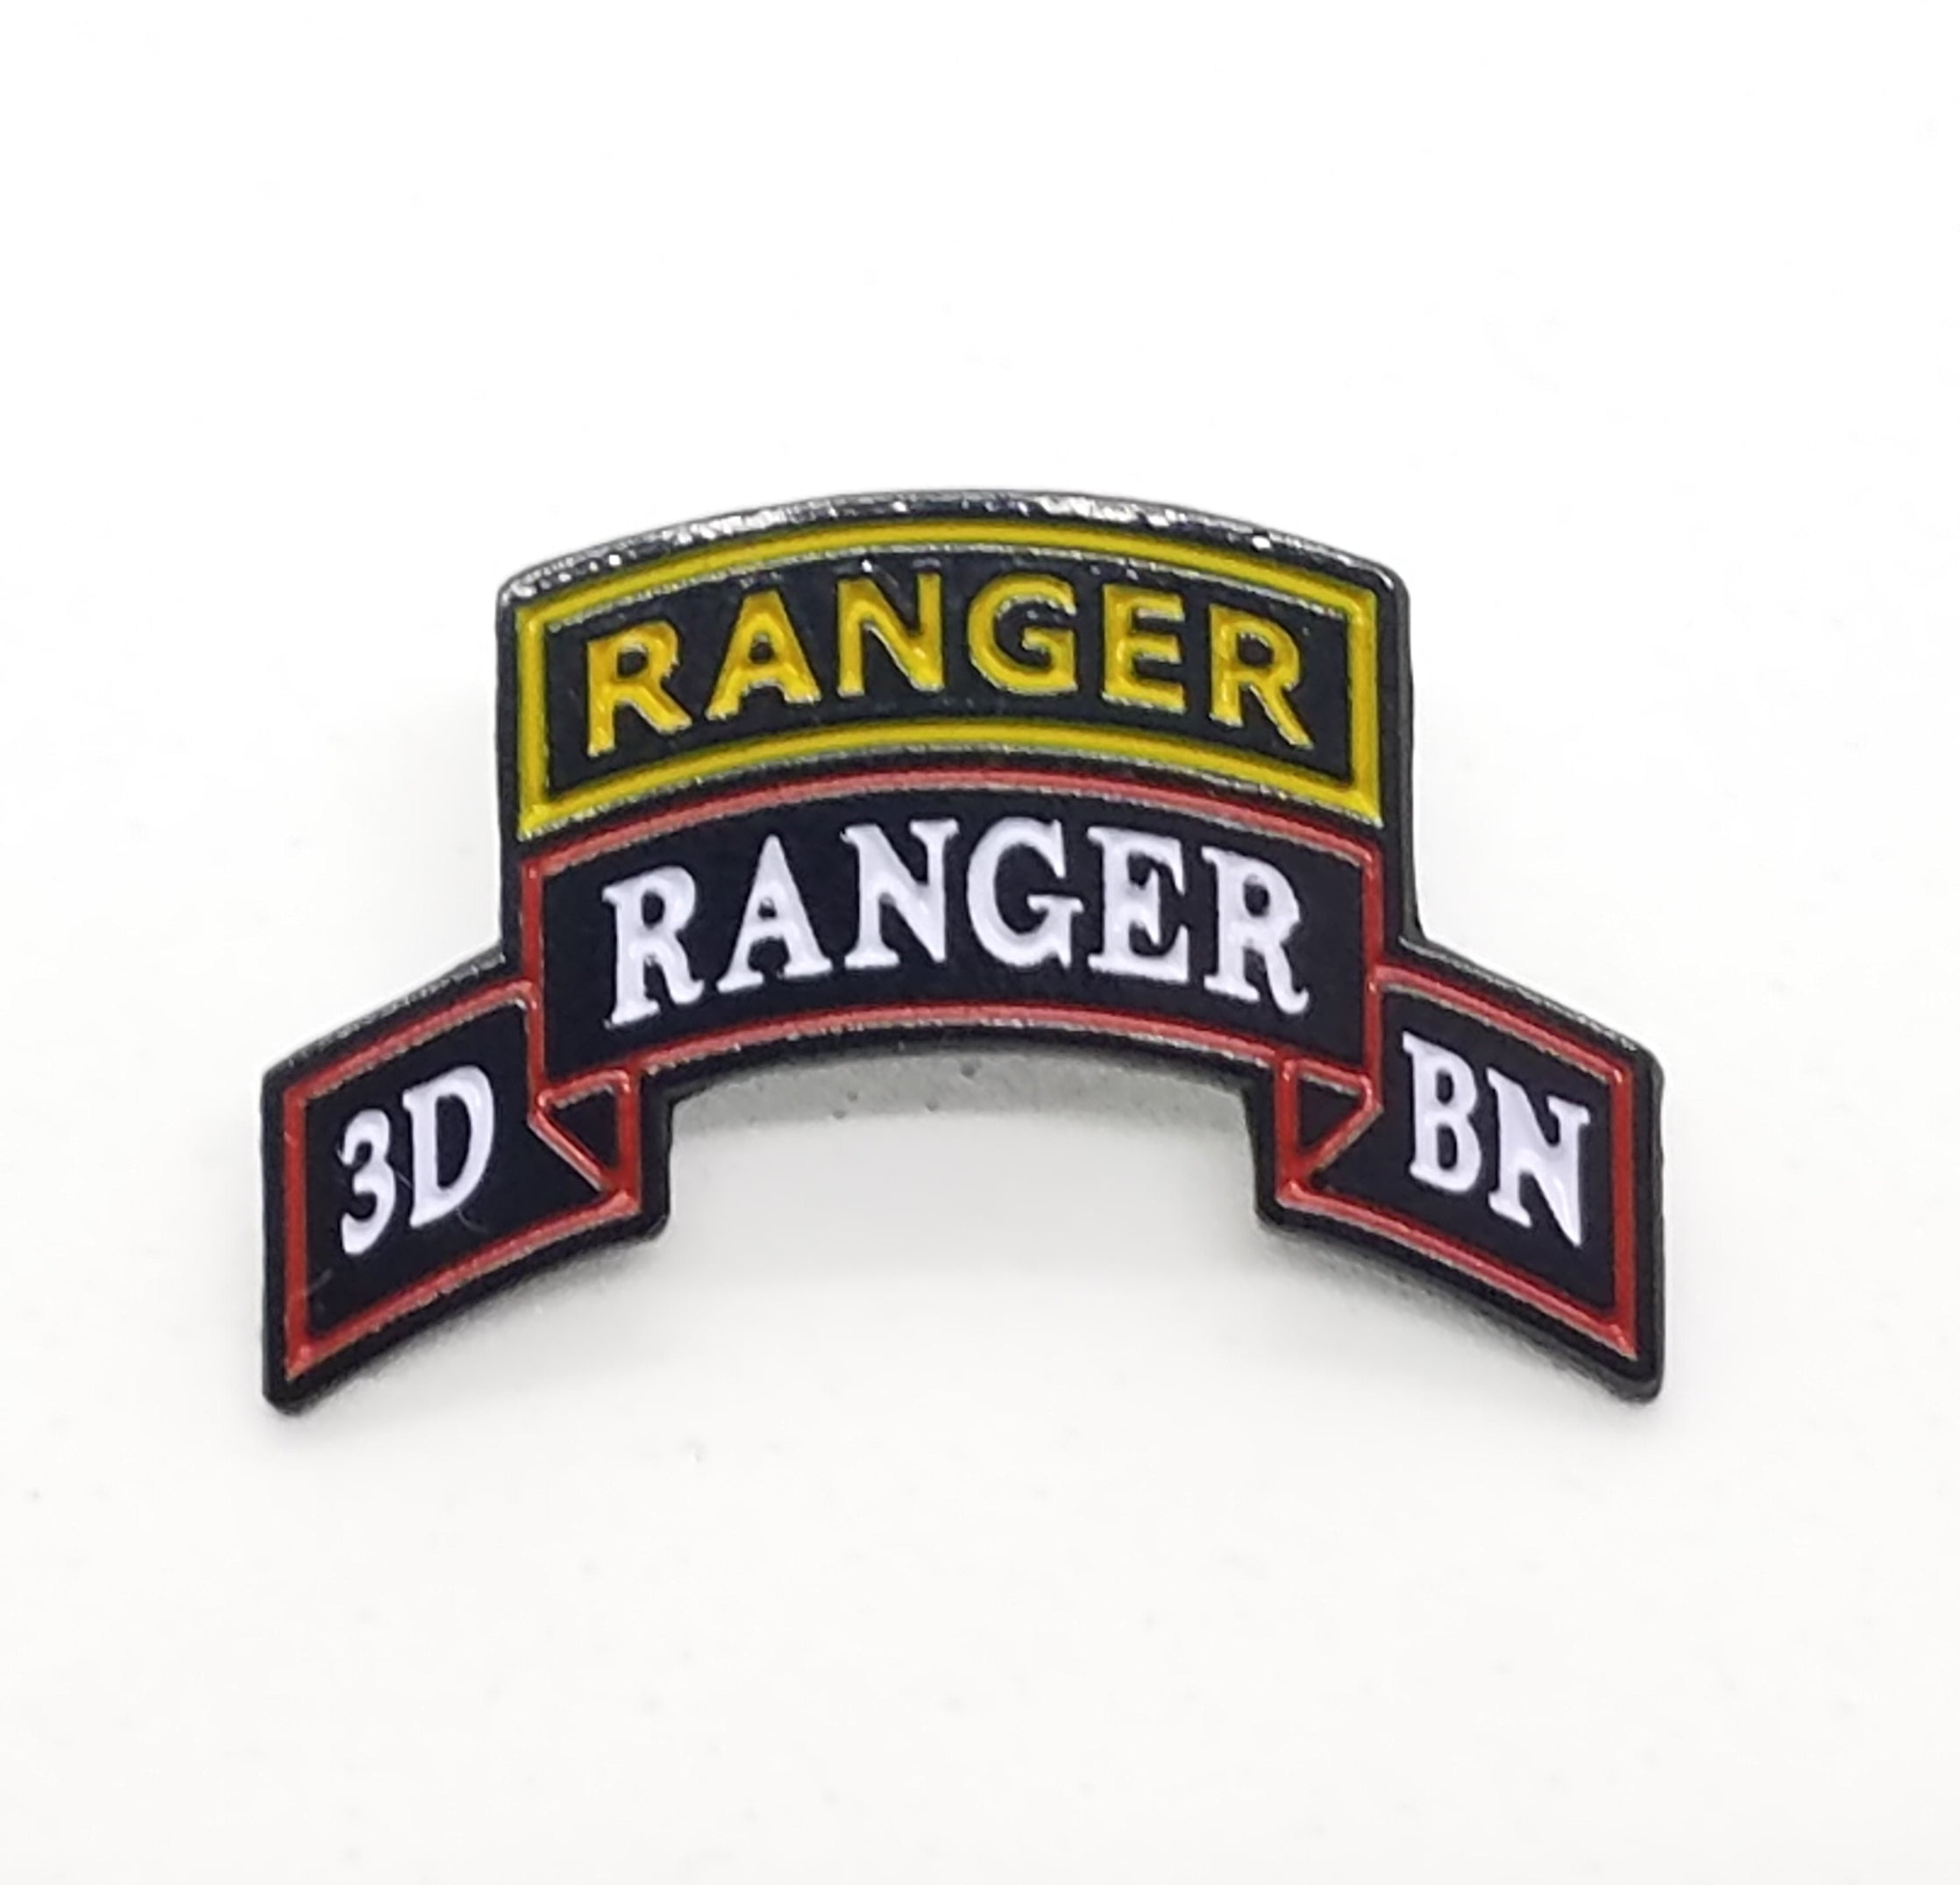 Pin on Rangers gear!